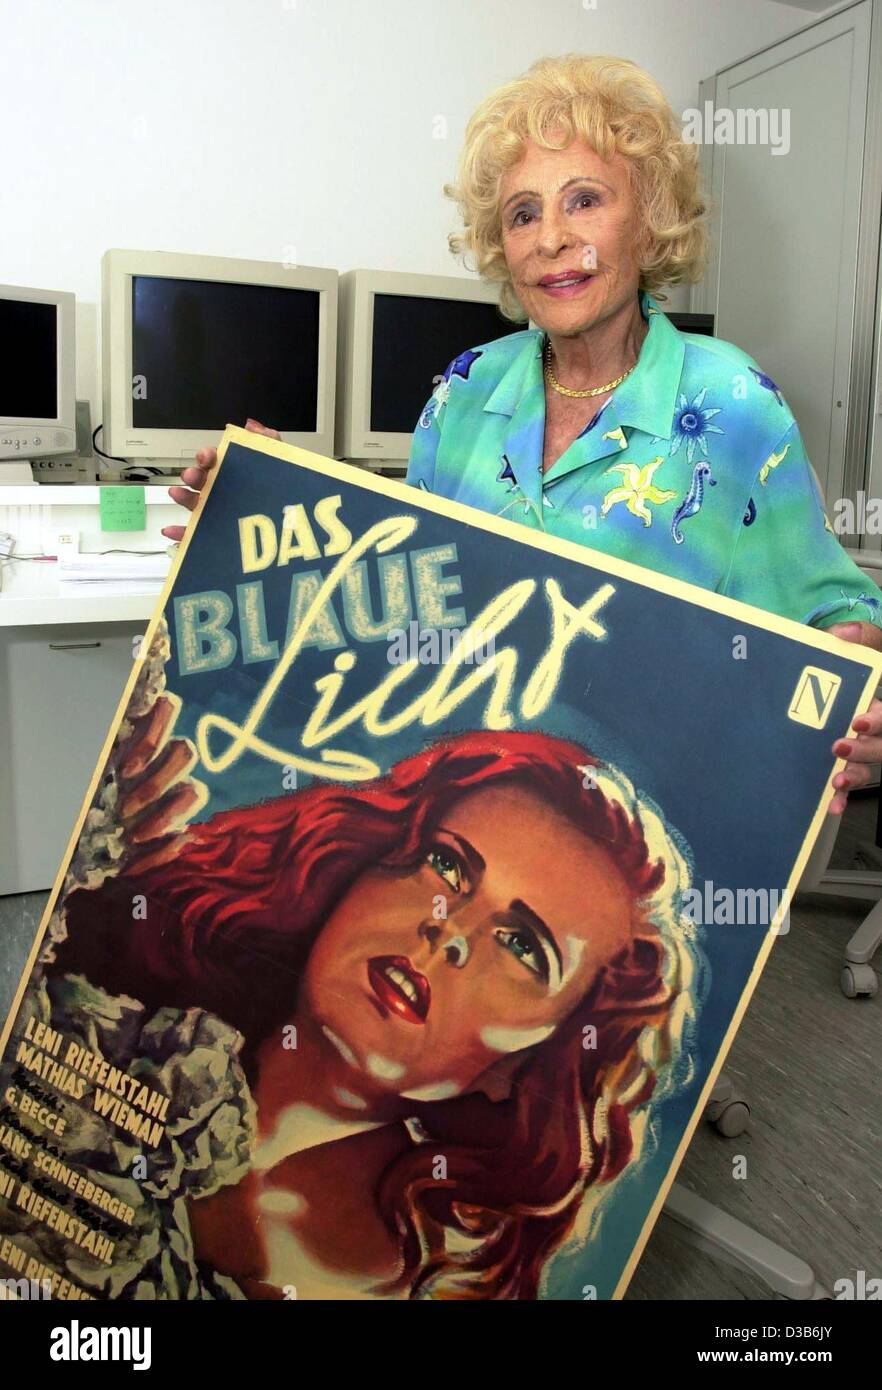 (Dpa) - deutscher Filmemacher Leni Riefenstahl stellt das Plakat ihres Films "The Blue Light" in ihrem Haus in Poecking, Deutschland, 13. August 2002. Die herausragende aber umstrittenen Regisseur und Fotograf, arbeitete für Hitler und dokumentiert eine riesige Nazi-Kundgebung in ihrem Film "Triumph des Willens" sowie Stockfoto